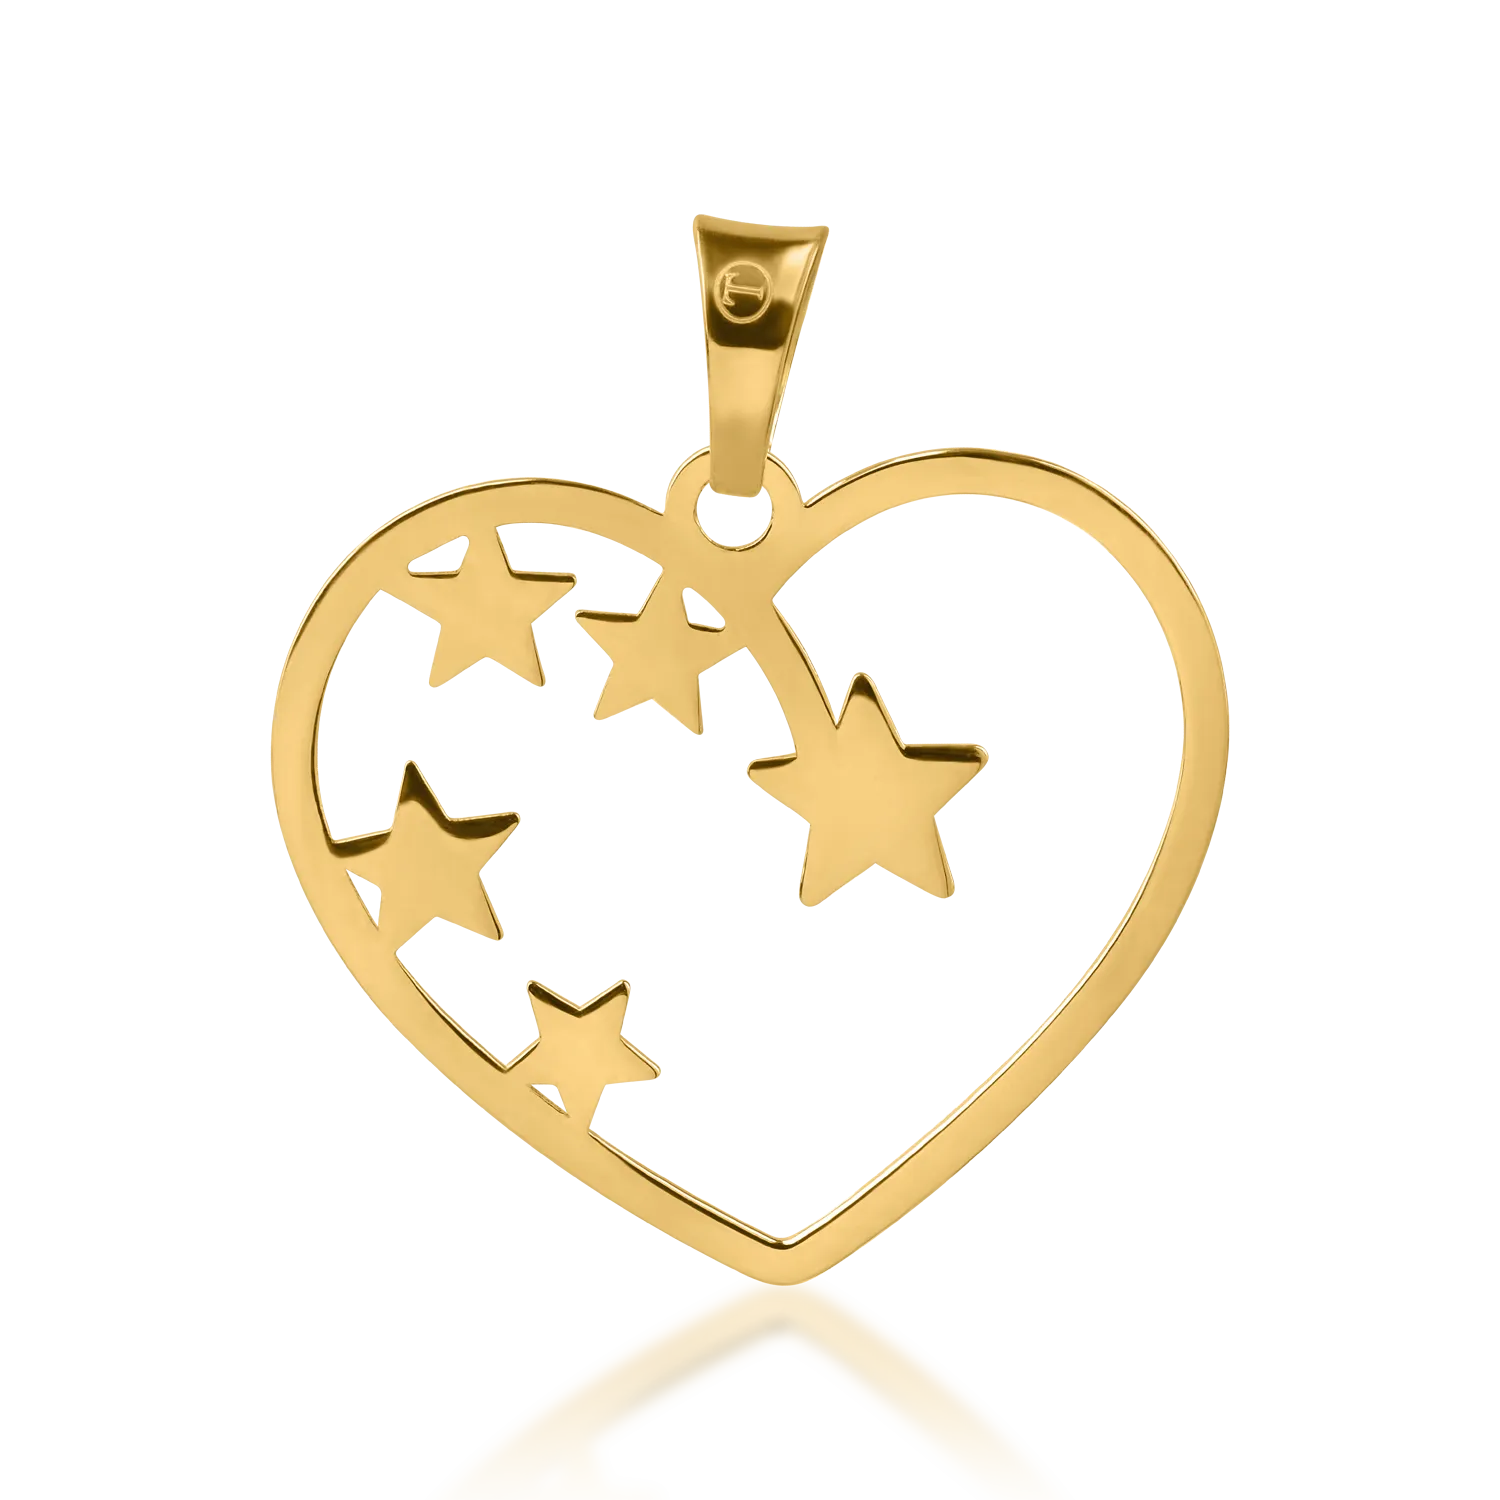 Zawieszka w kształcie serca i gwiazdy z biało-żółtego złota